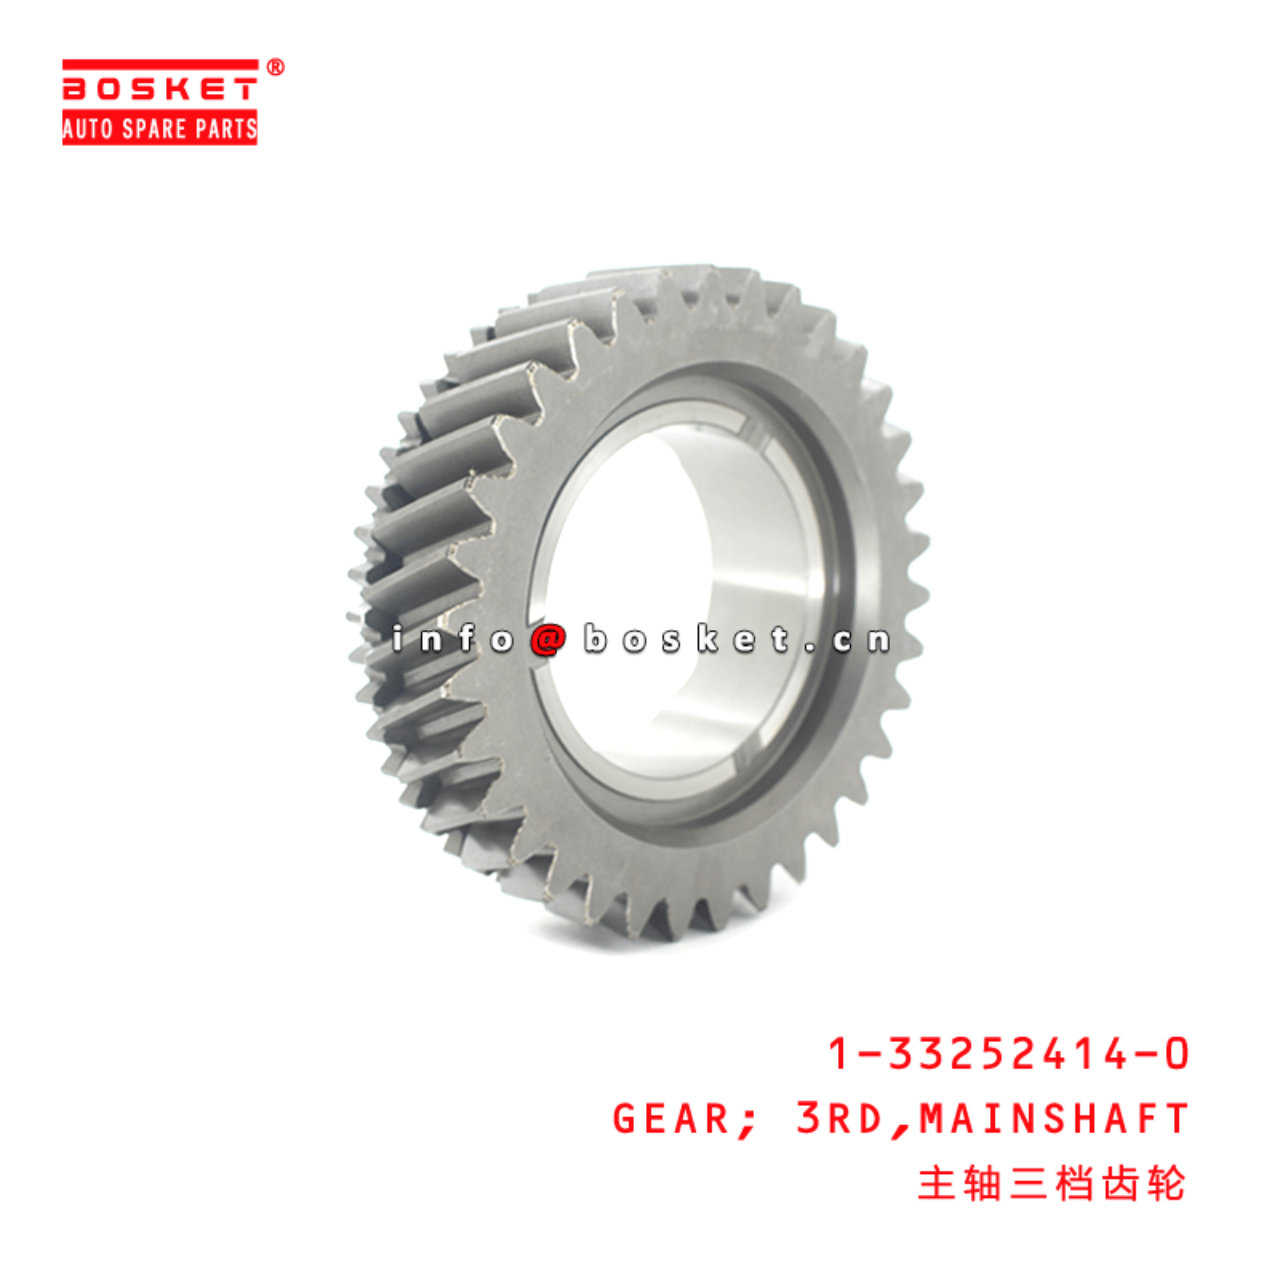  1-33252414-0 Mainshaft Third Gear 1332524140 Suitable for ISUZU FRR FSR FTR